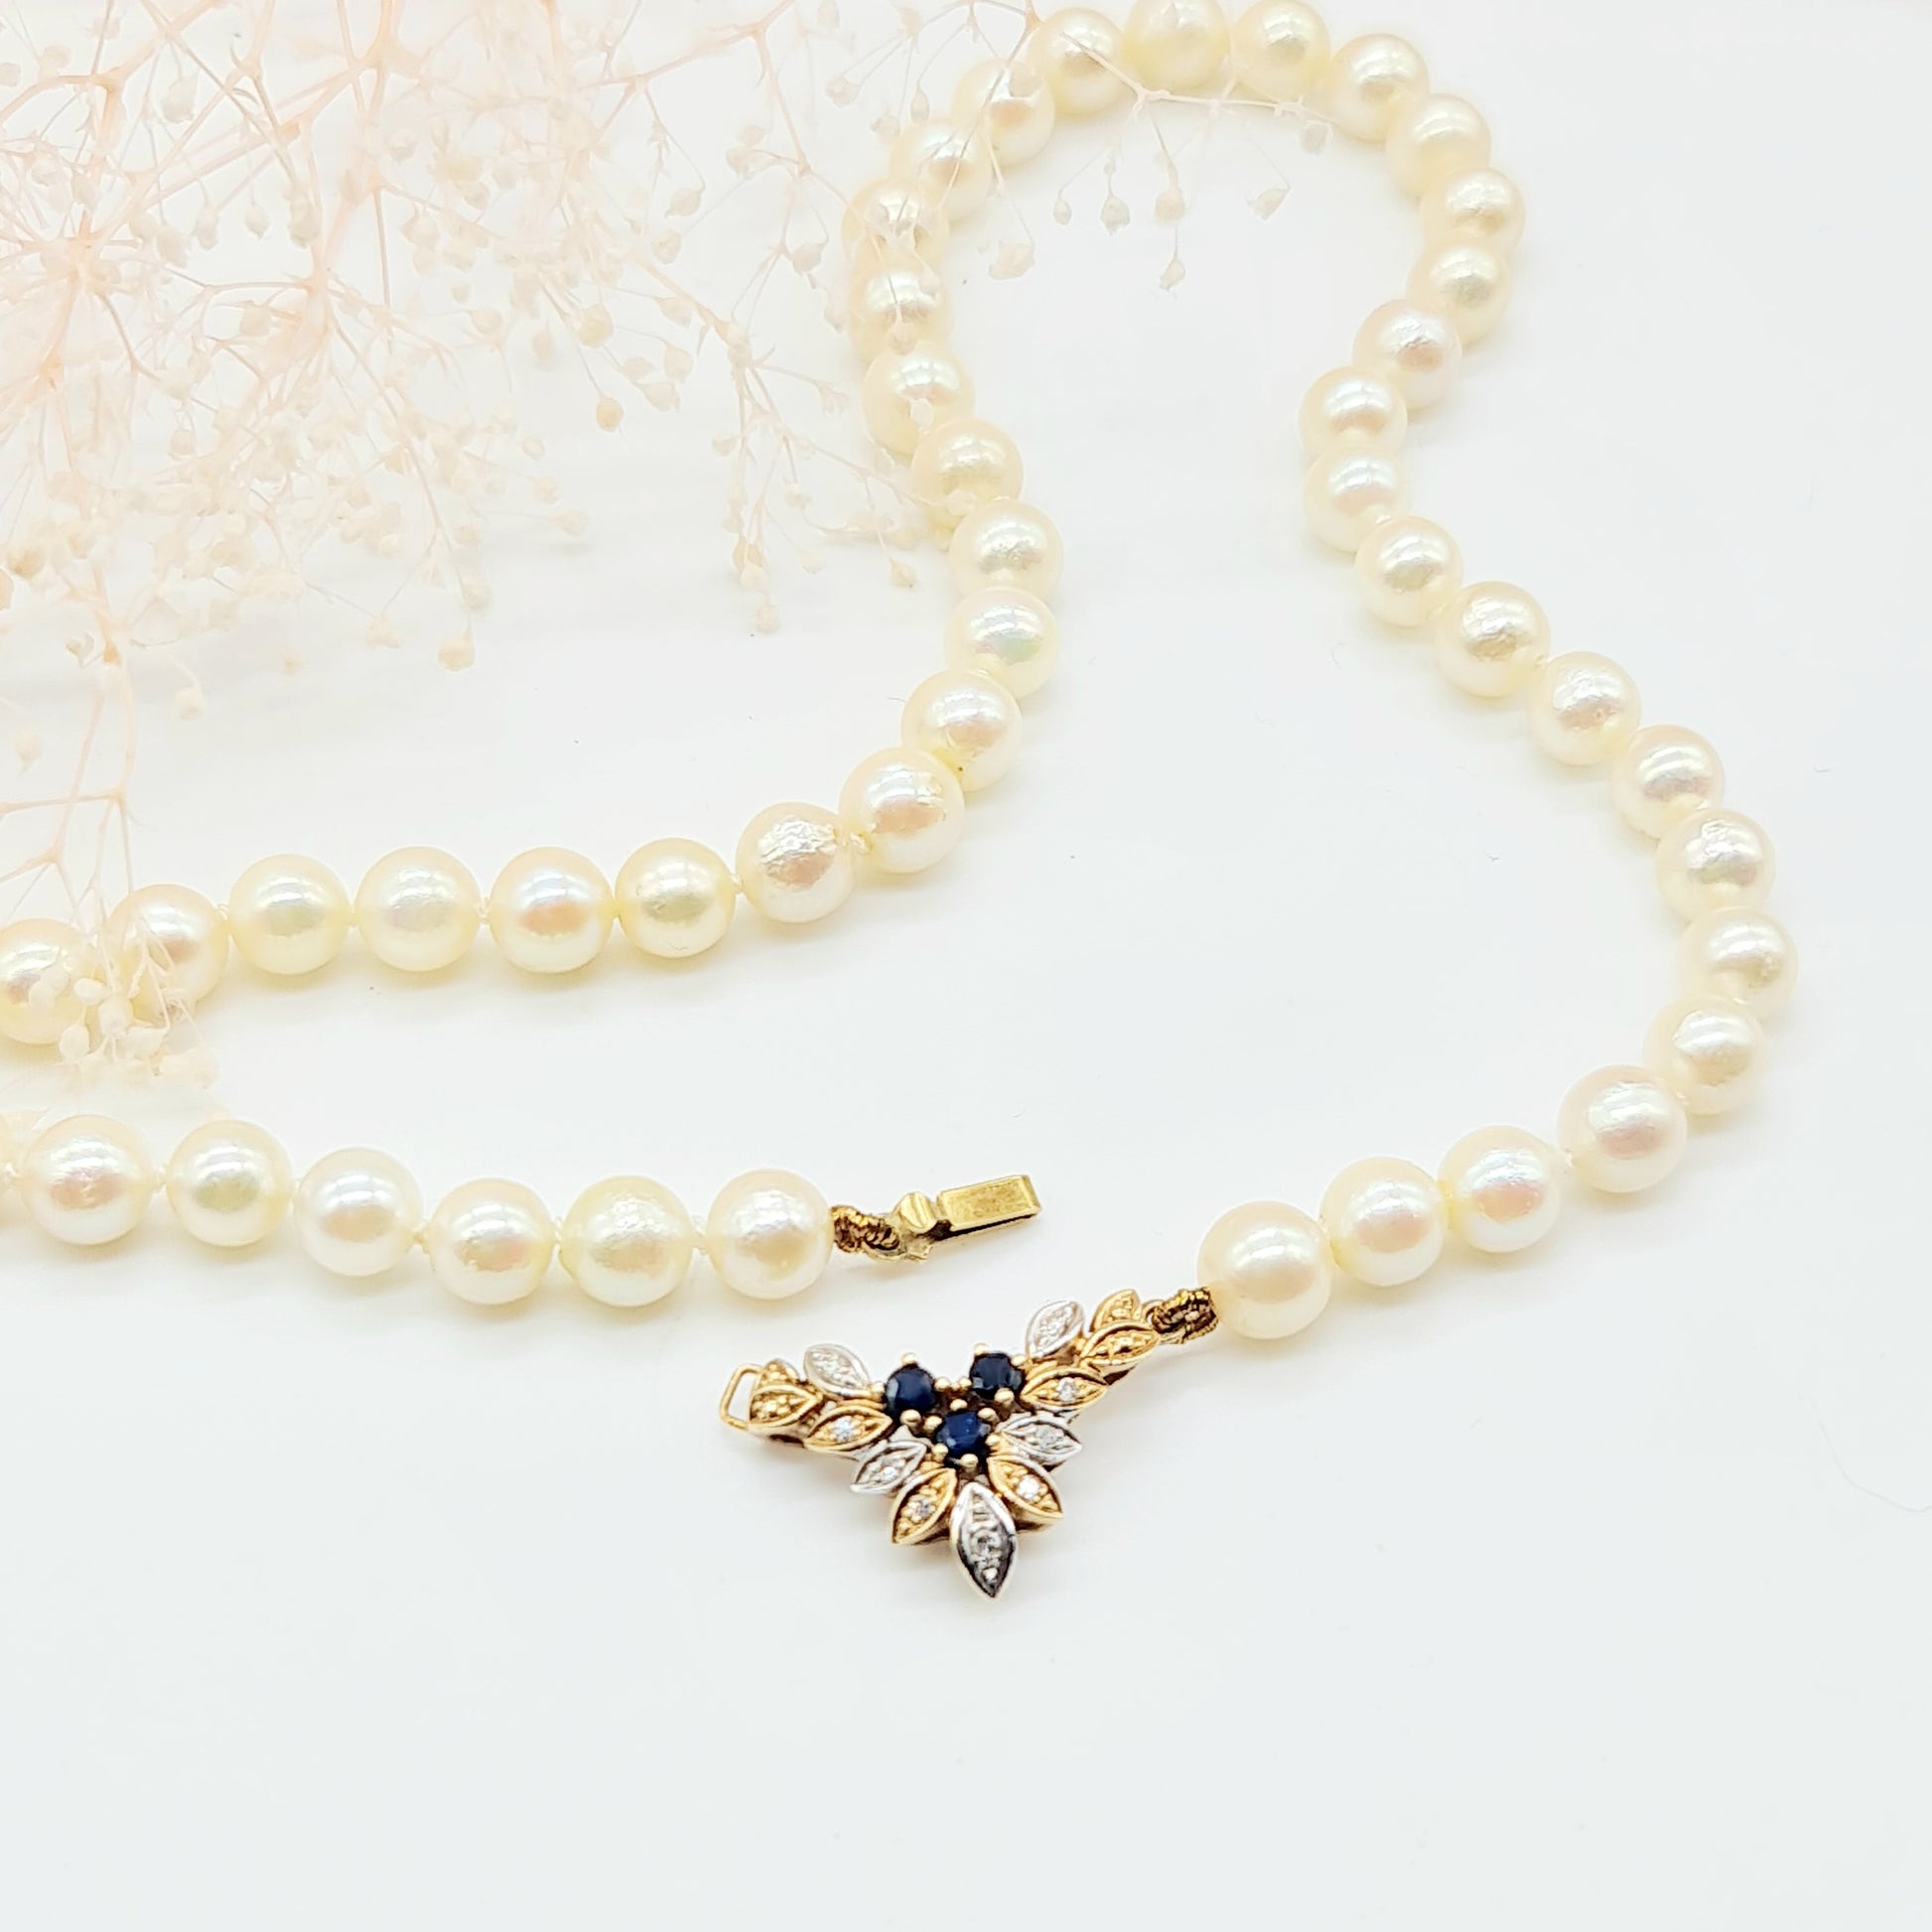 Raffiniertes Perlencollier 6mm mit Brillanten und Safiren, 585 14 kt Gelbgold und Weißgold, 46 cm